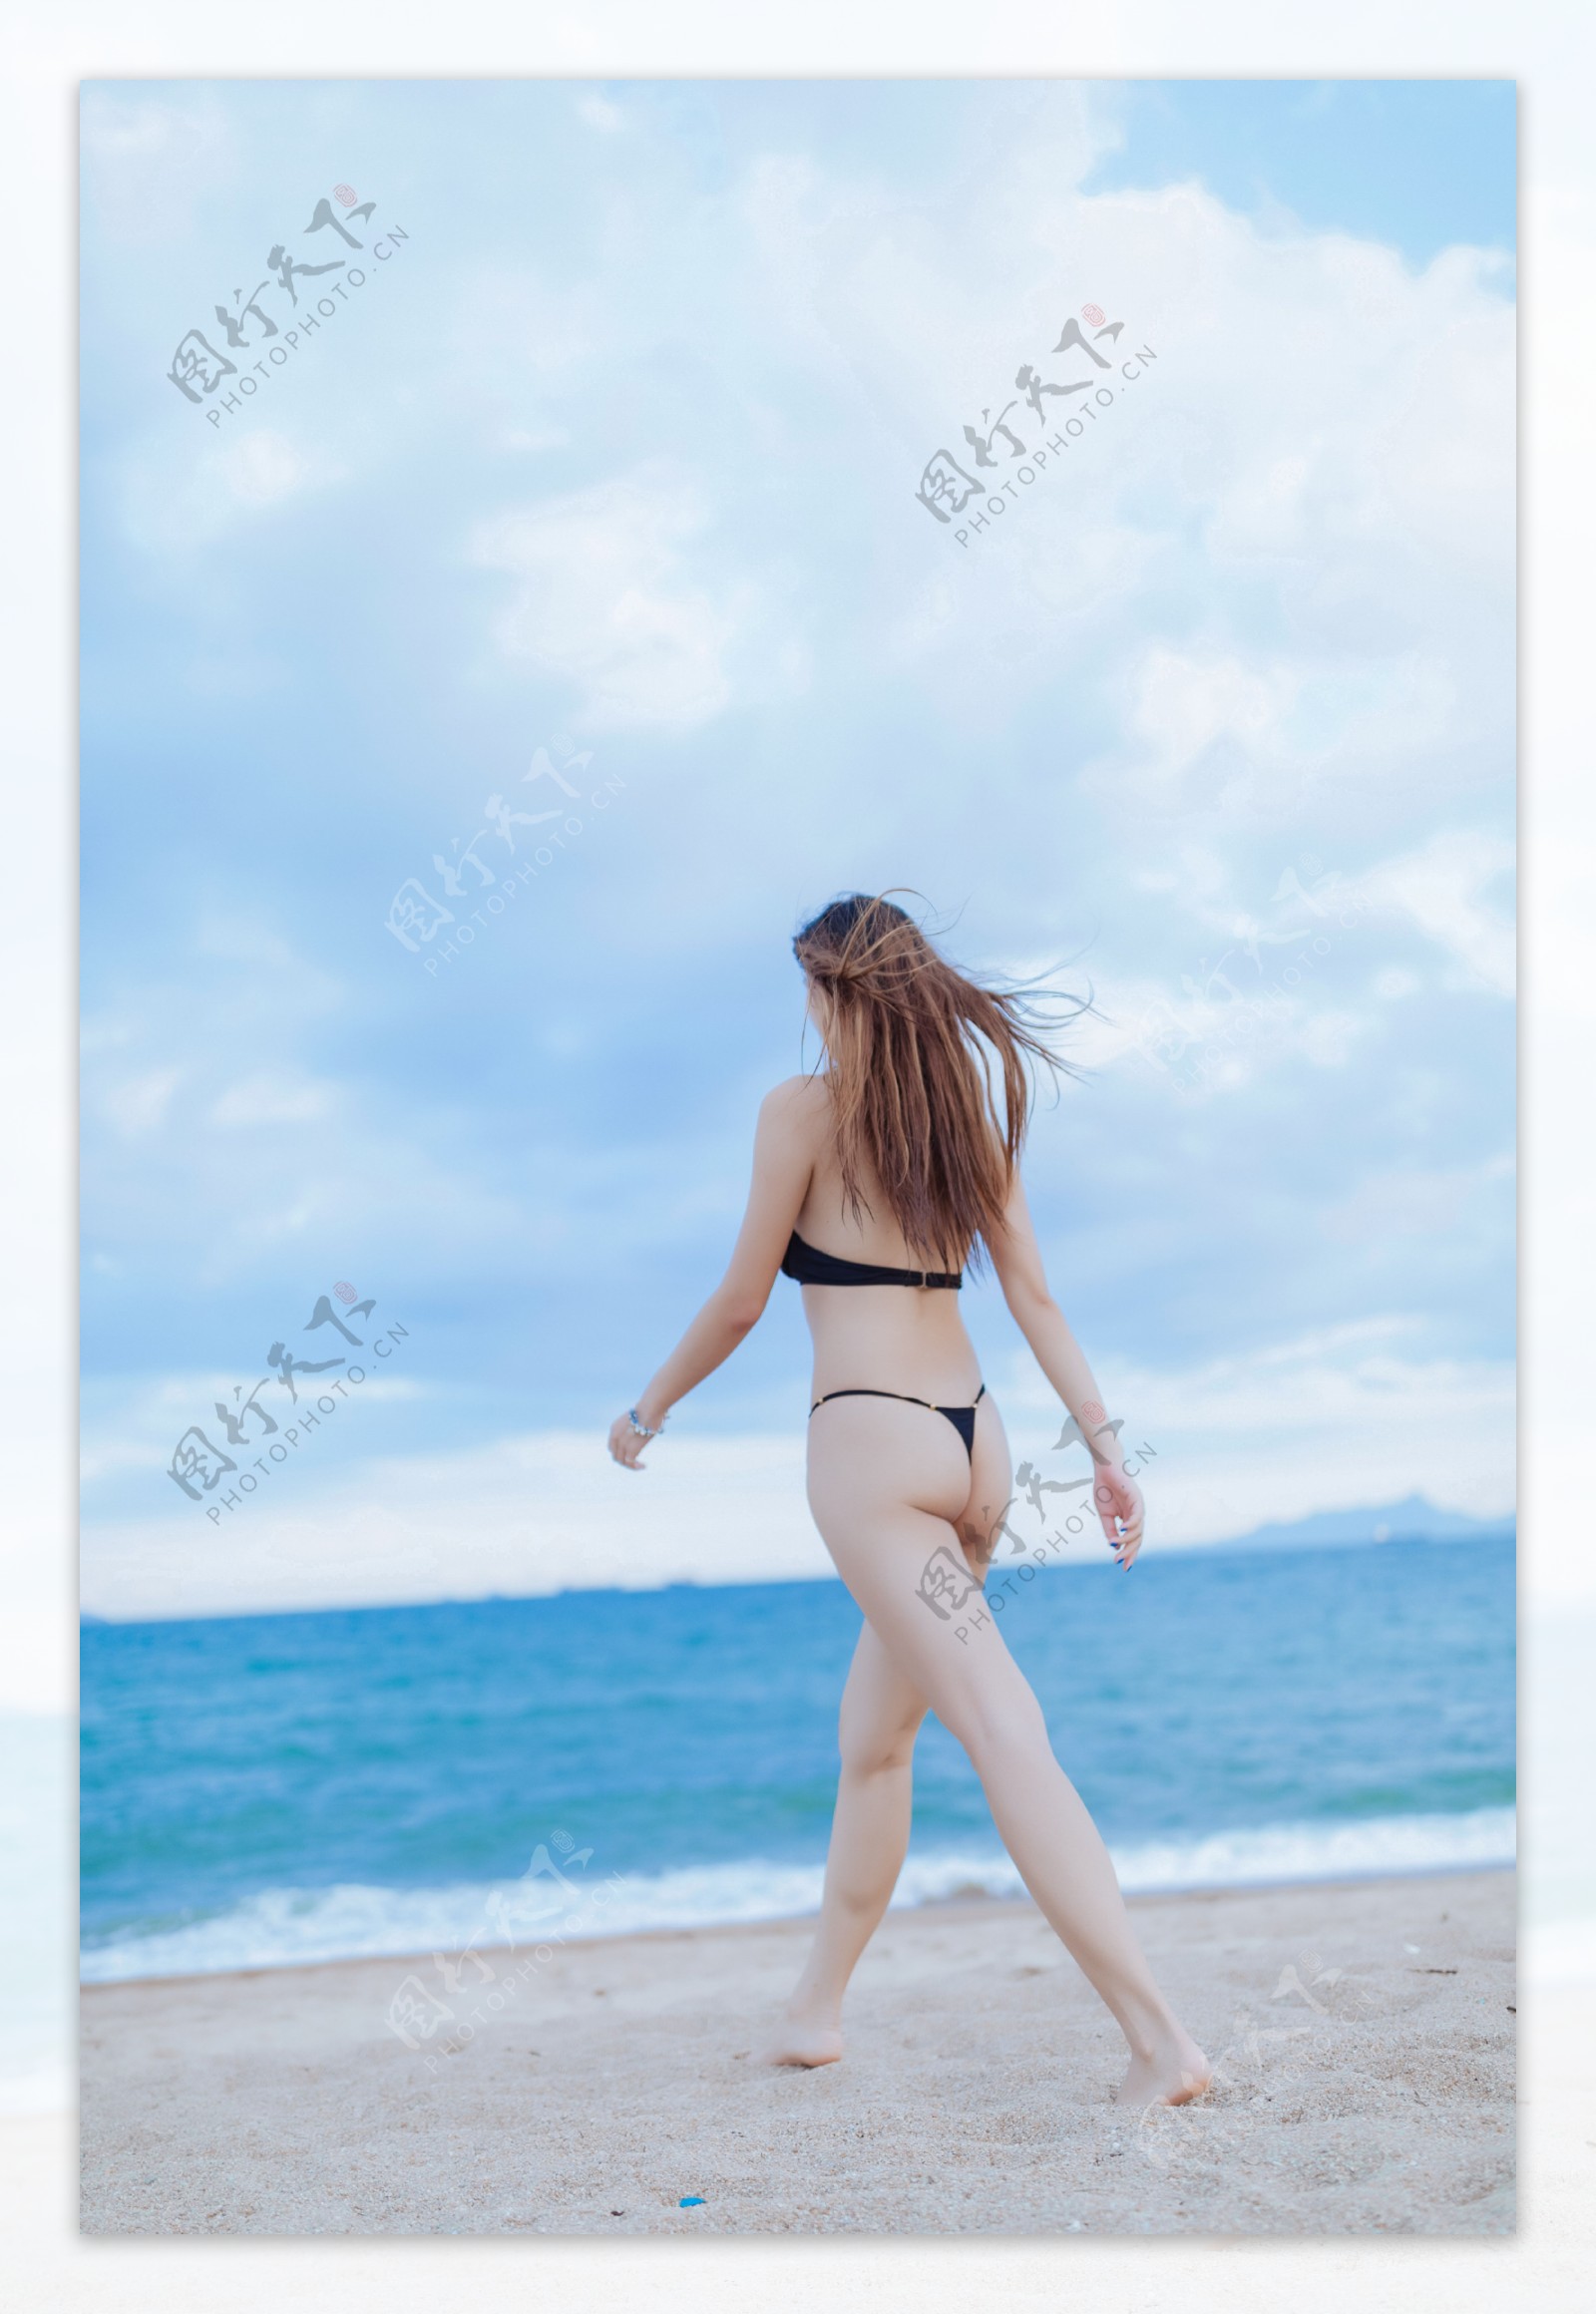 沙滩上游玩的美女图片